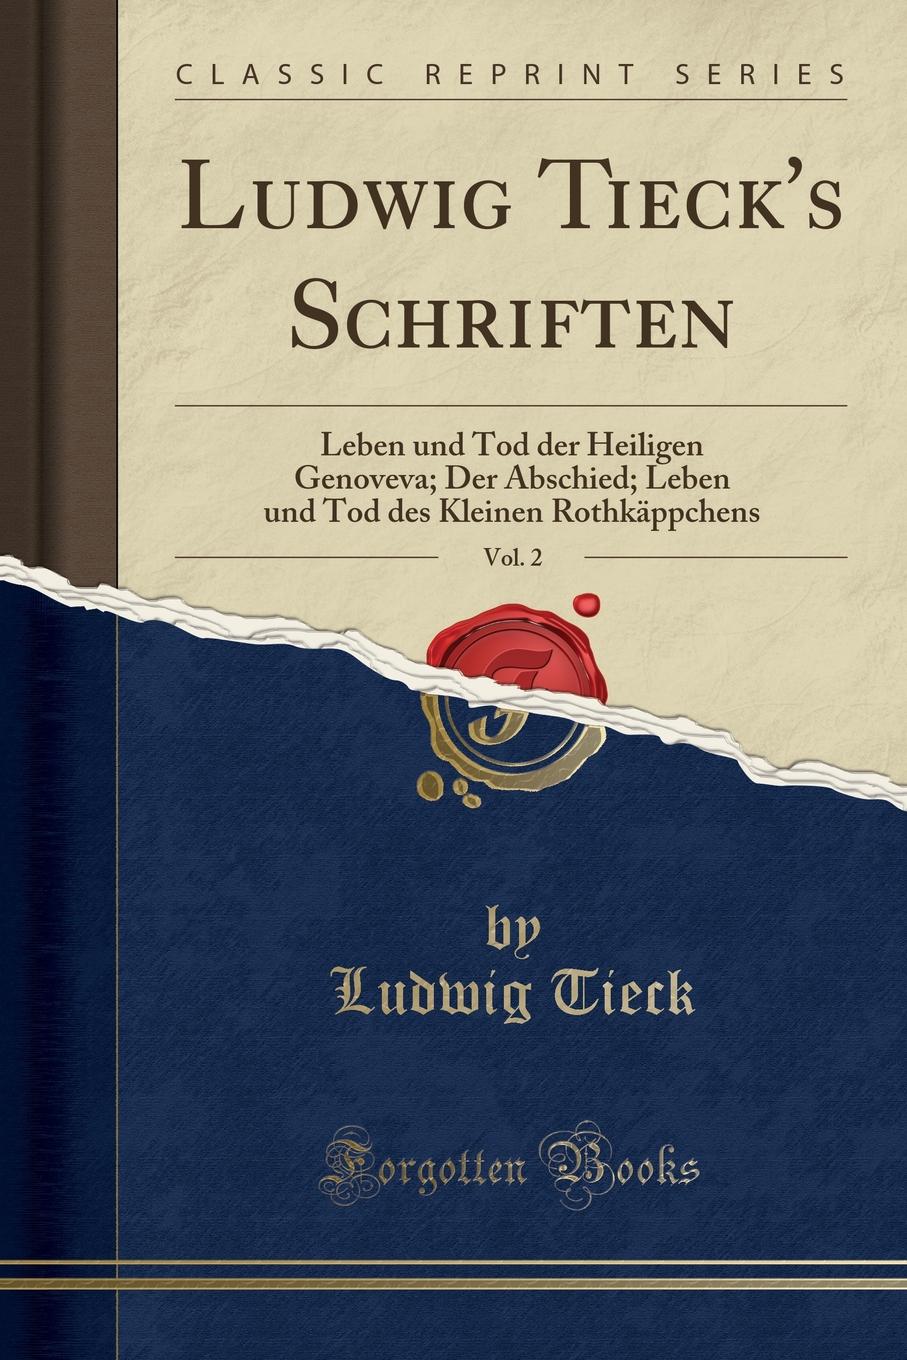 Ludwig Tieck Ludwig Tieck.s Schriften, Vol. 2. Leben und Tod der Heiligen Genoveva; Der Abschied; Leben und Tod des Kleinen Rothkappchens (Classic Reprint)